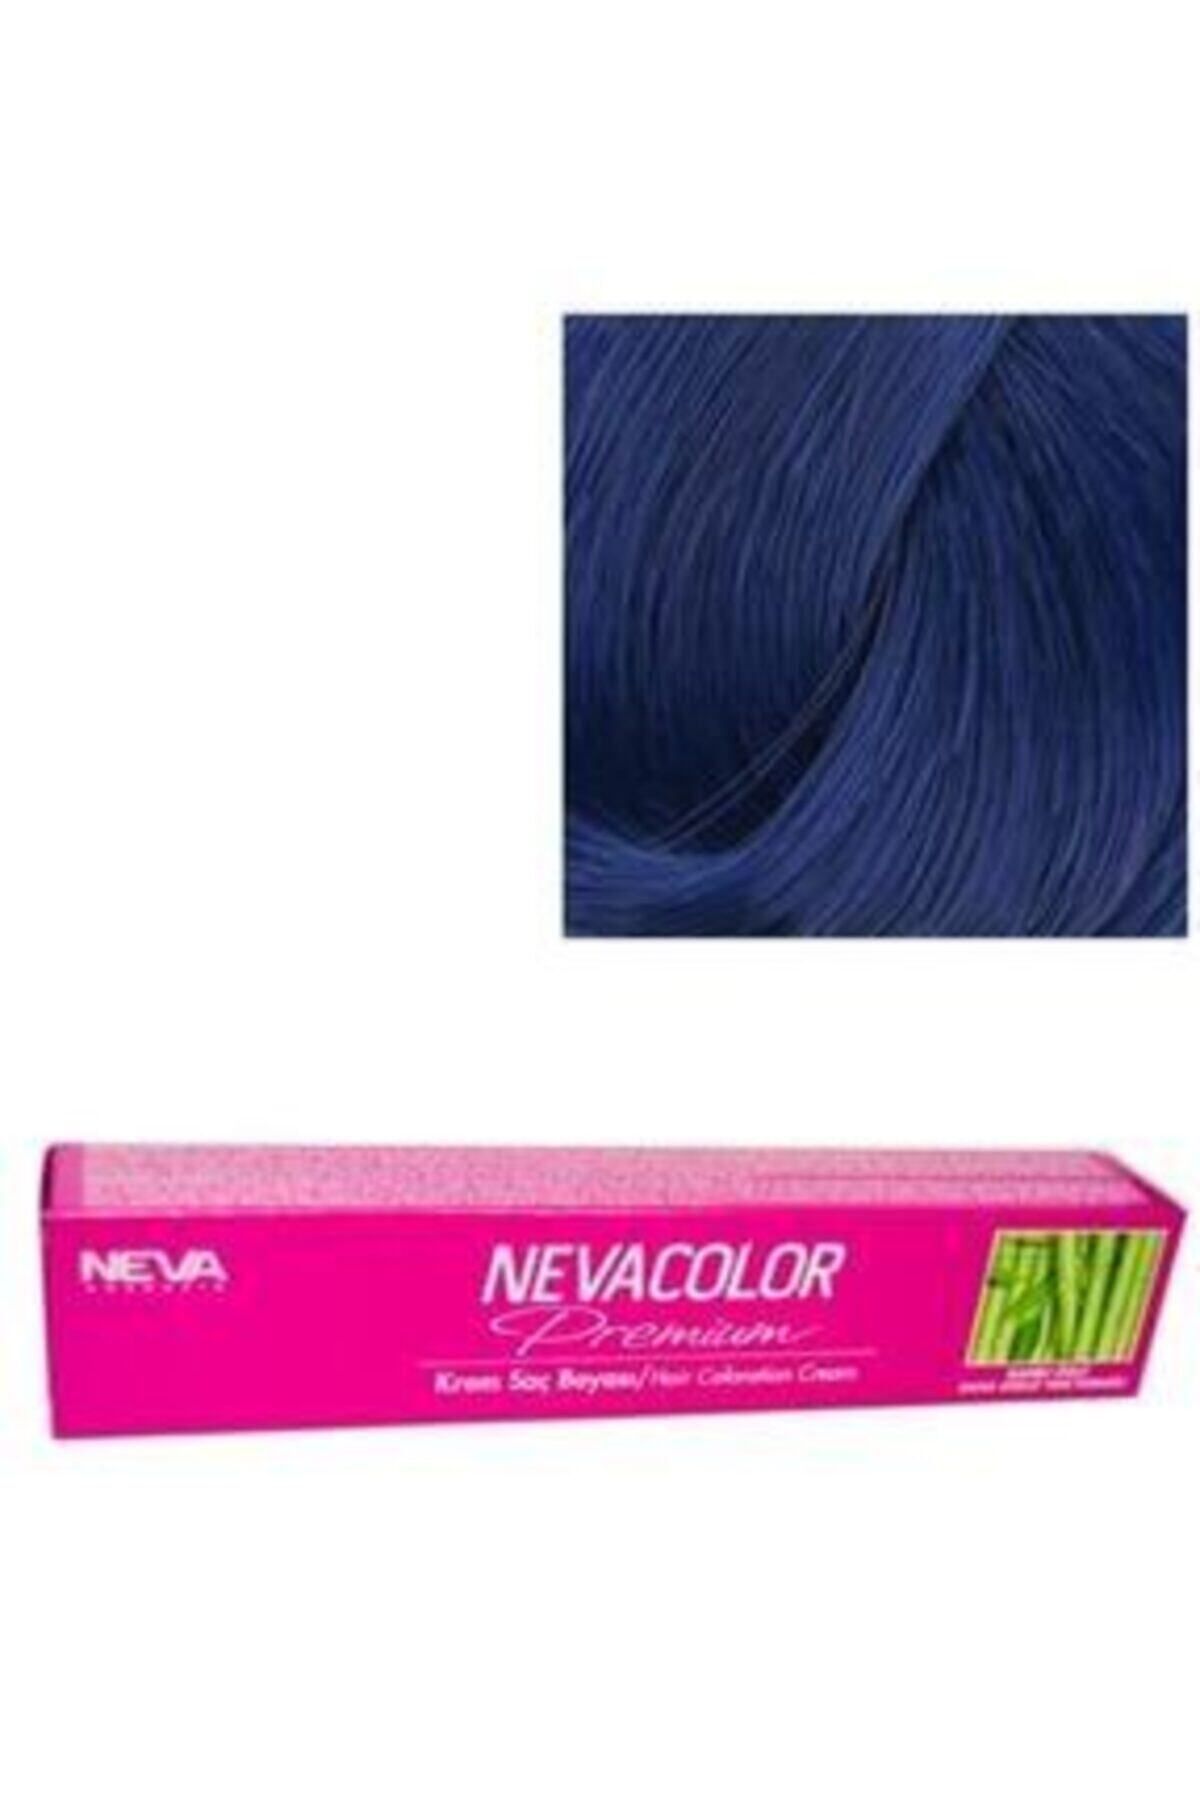 Neva Color Premium Kalıcı Krem Saç Boyası 0.11 Yoğun Mavi